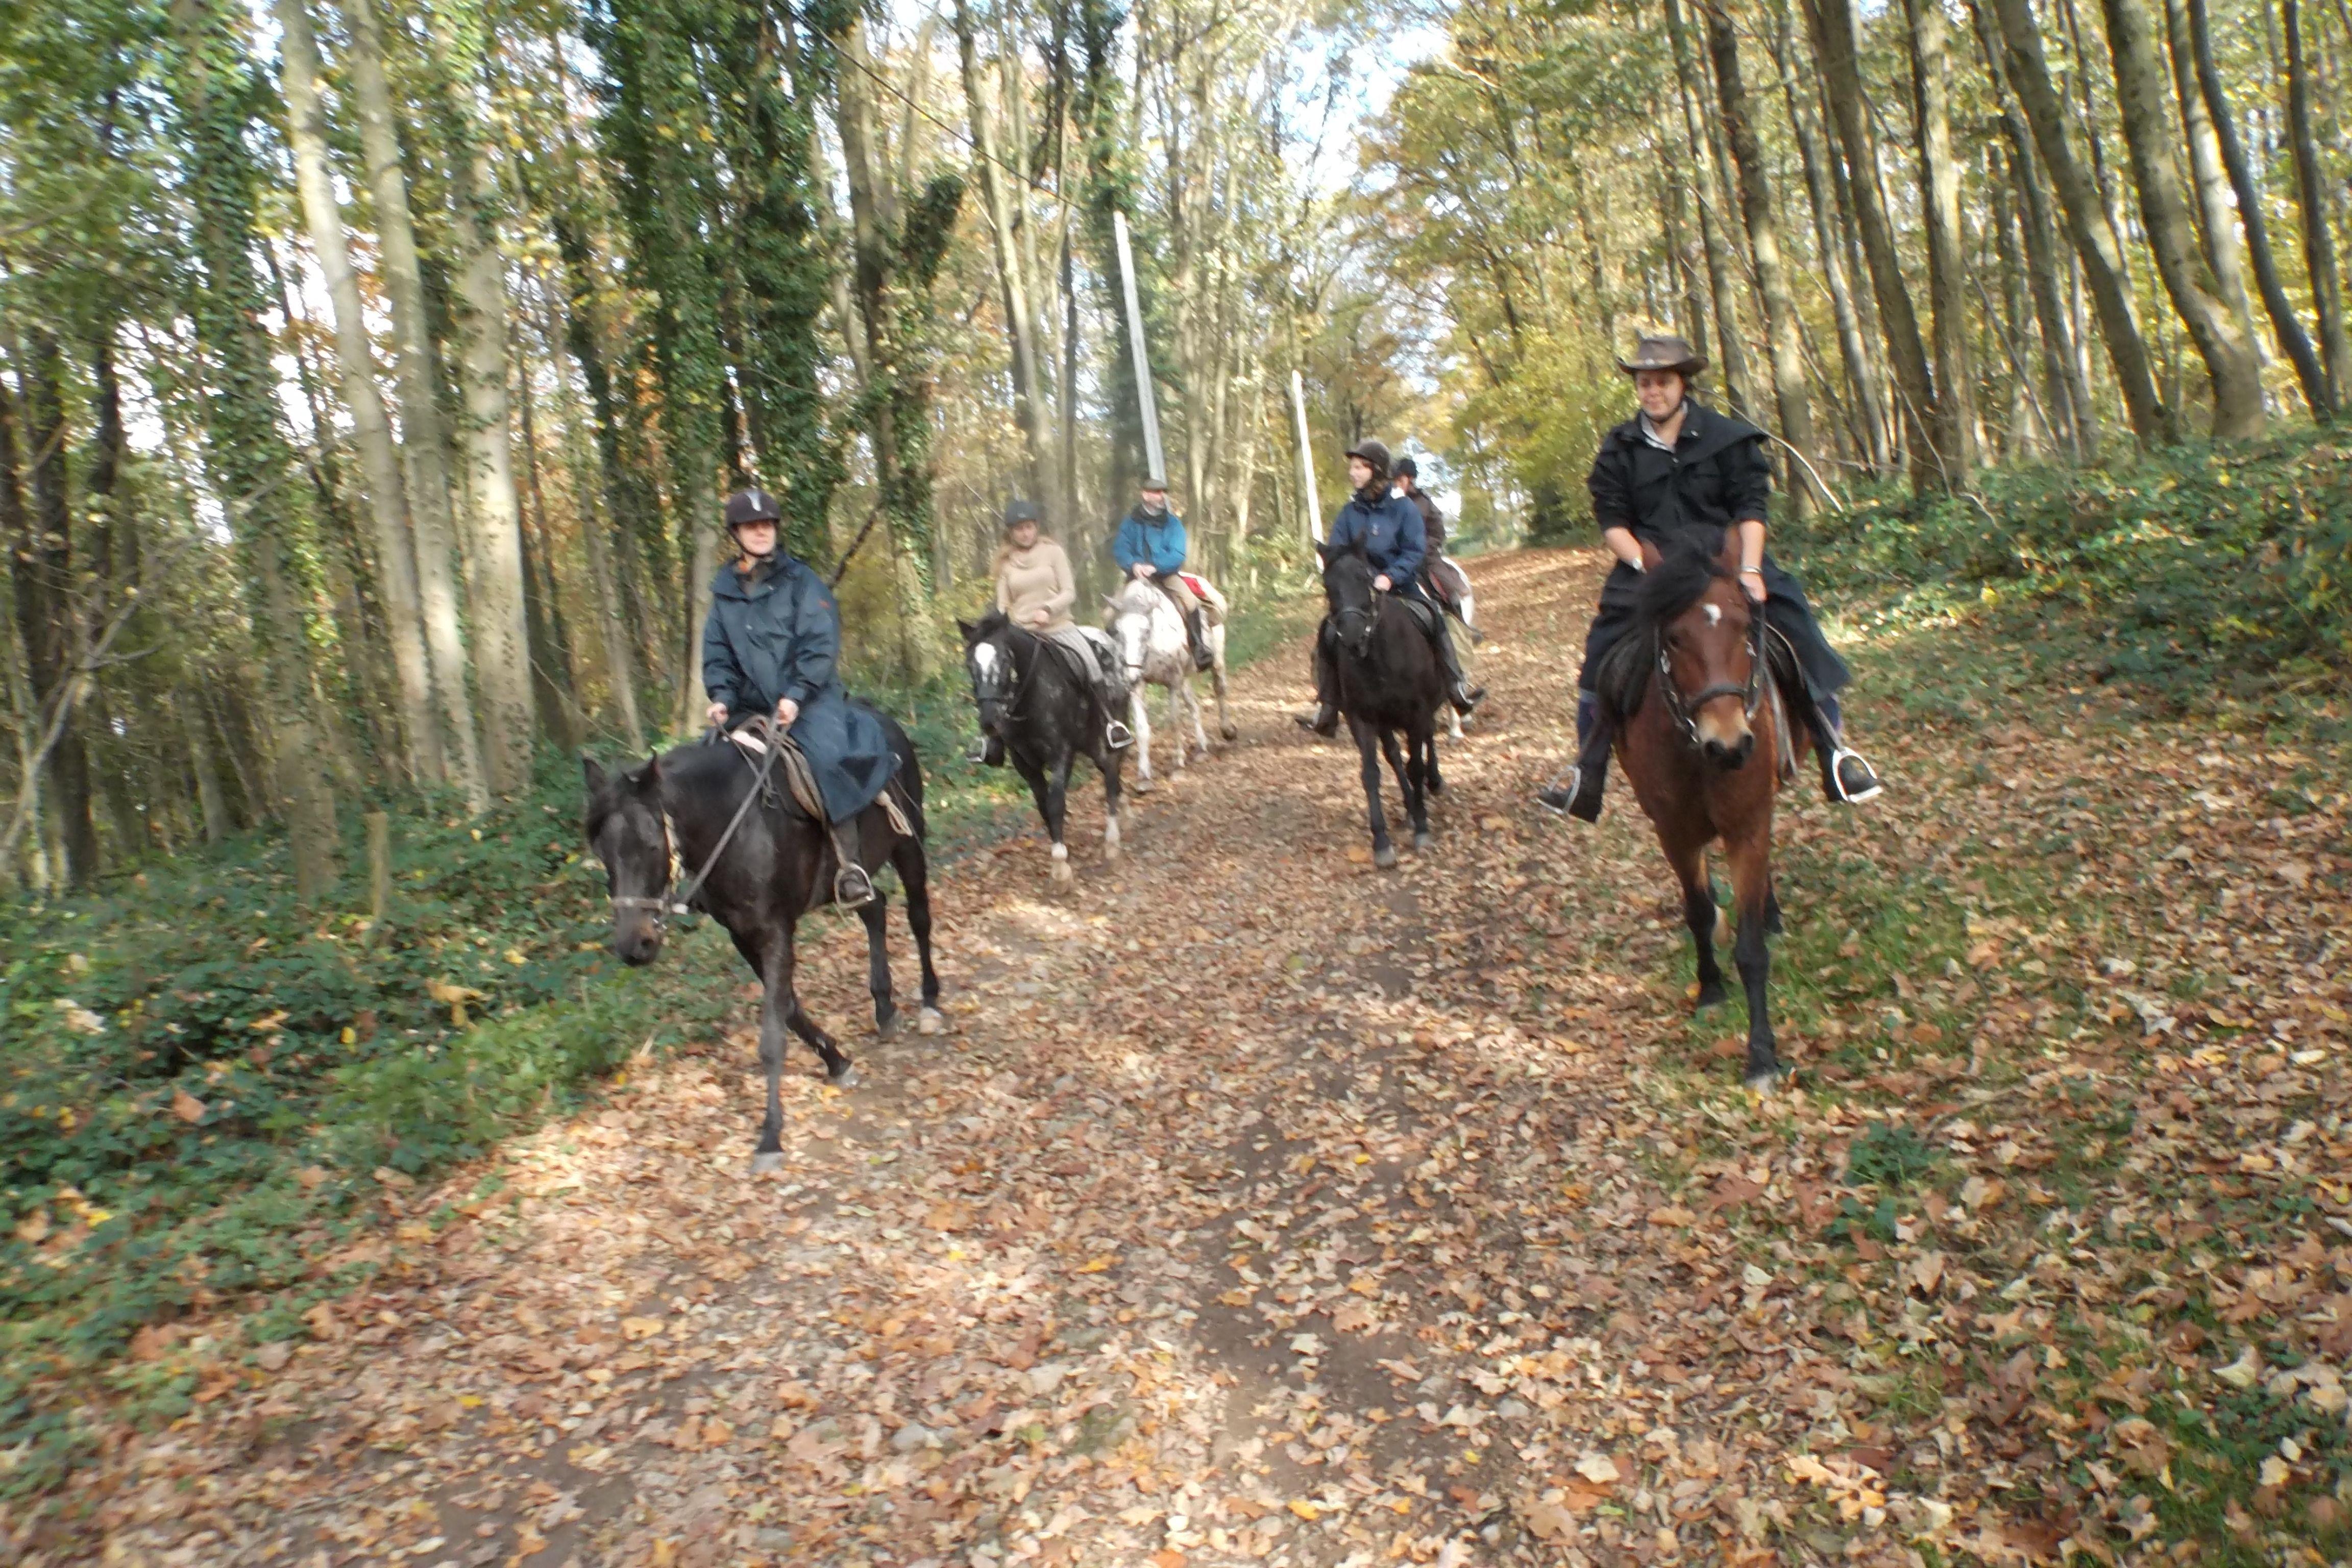 AWTE - Association Wallonne de Tourisme Equestre